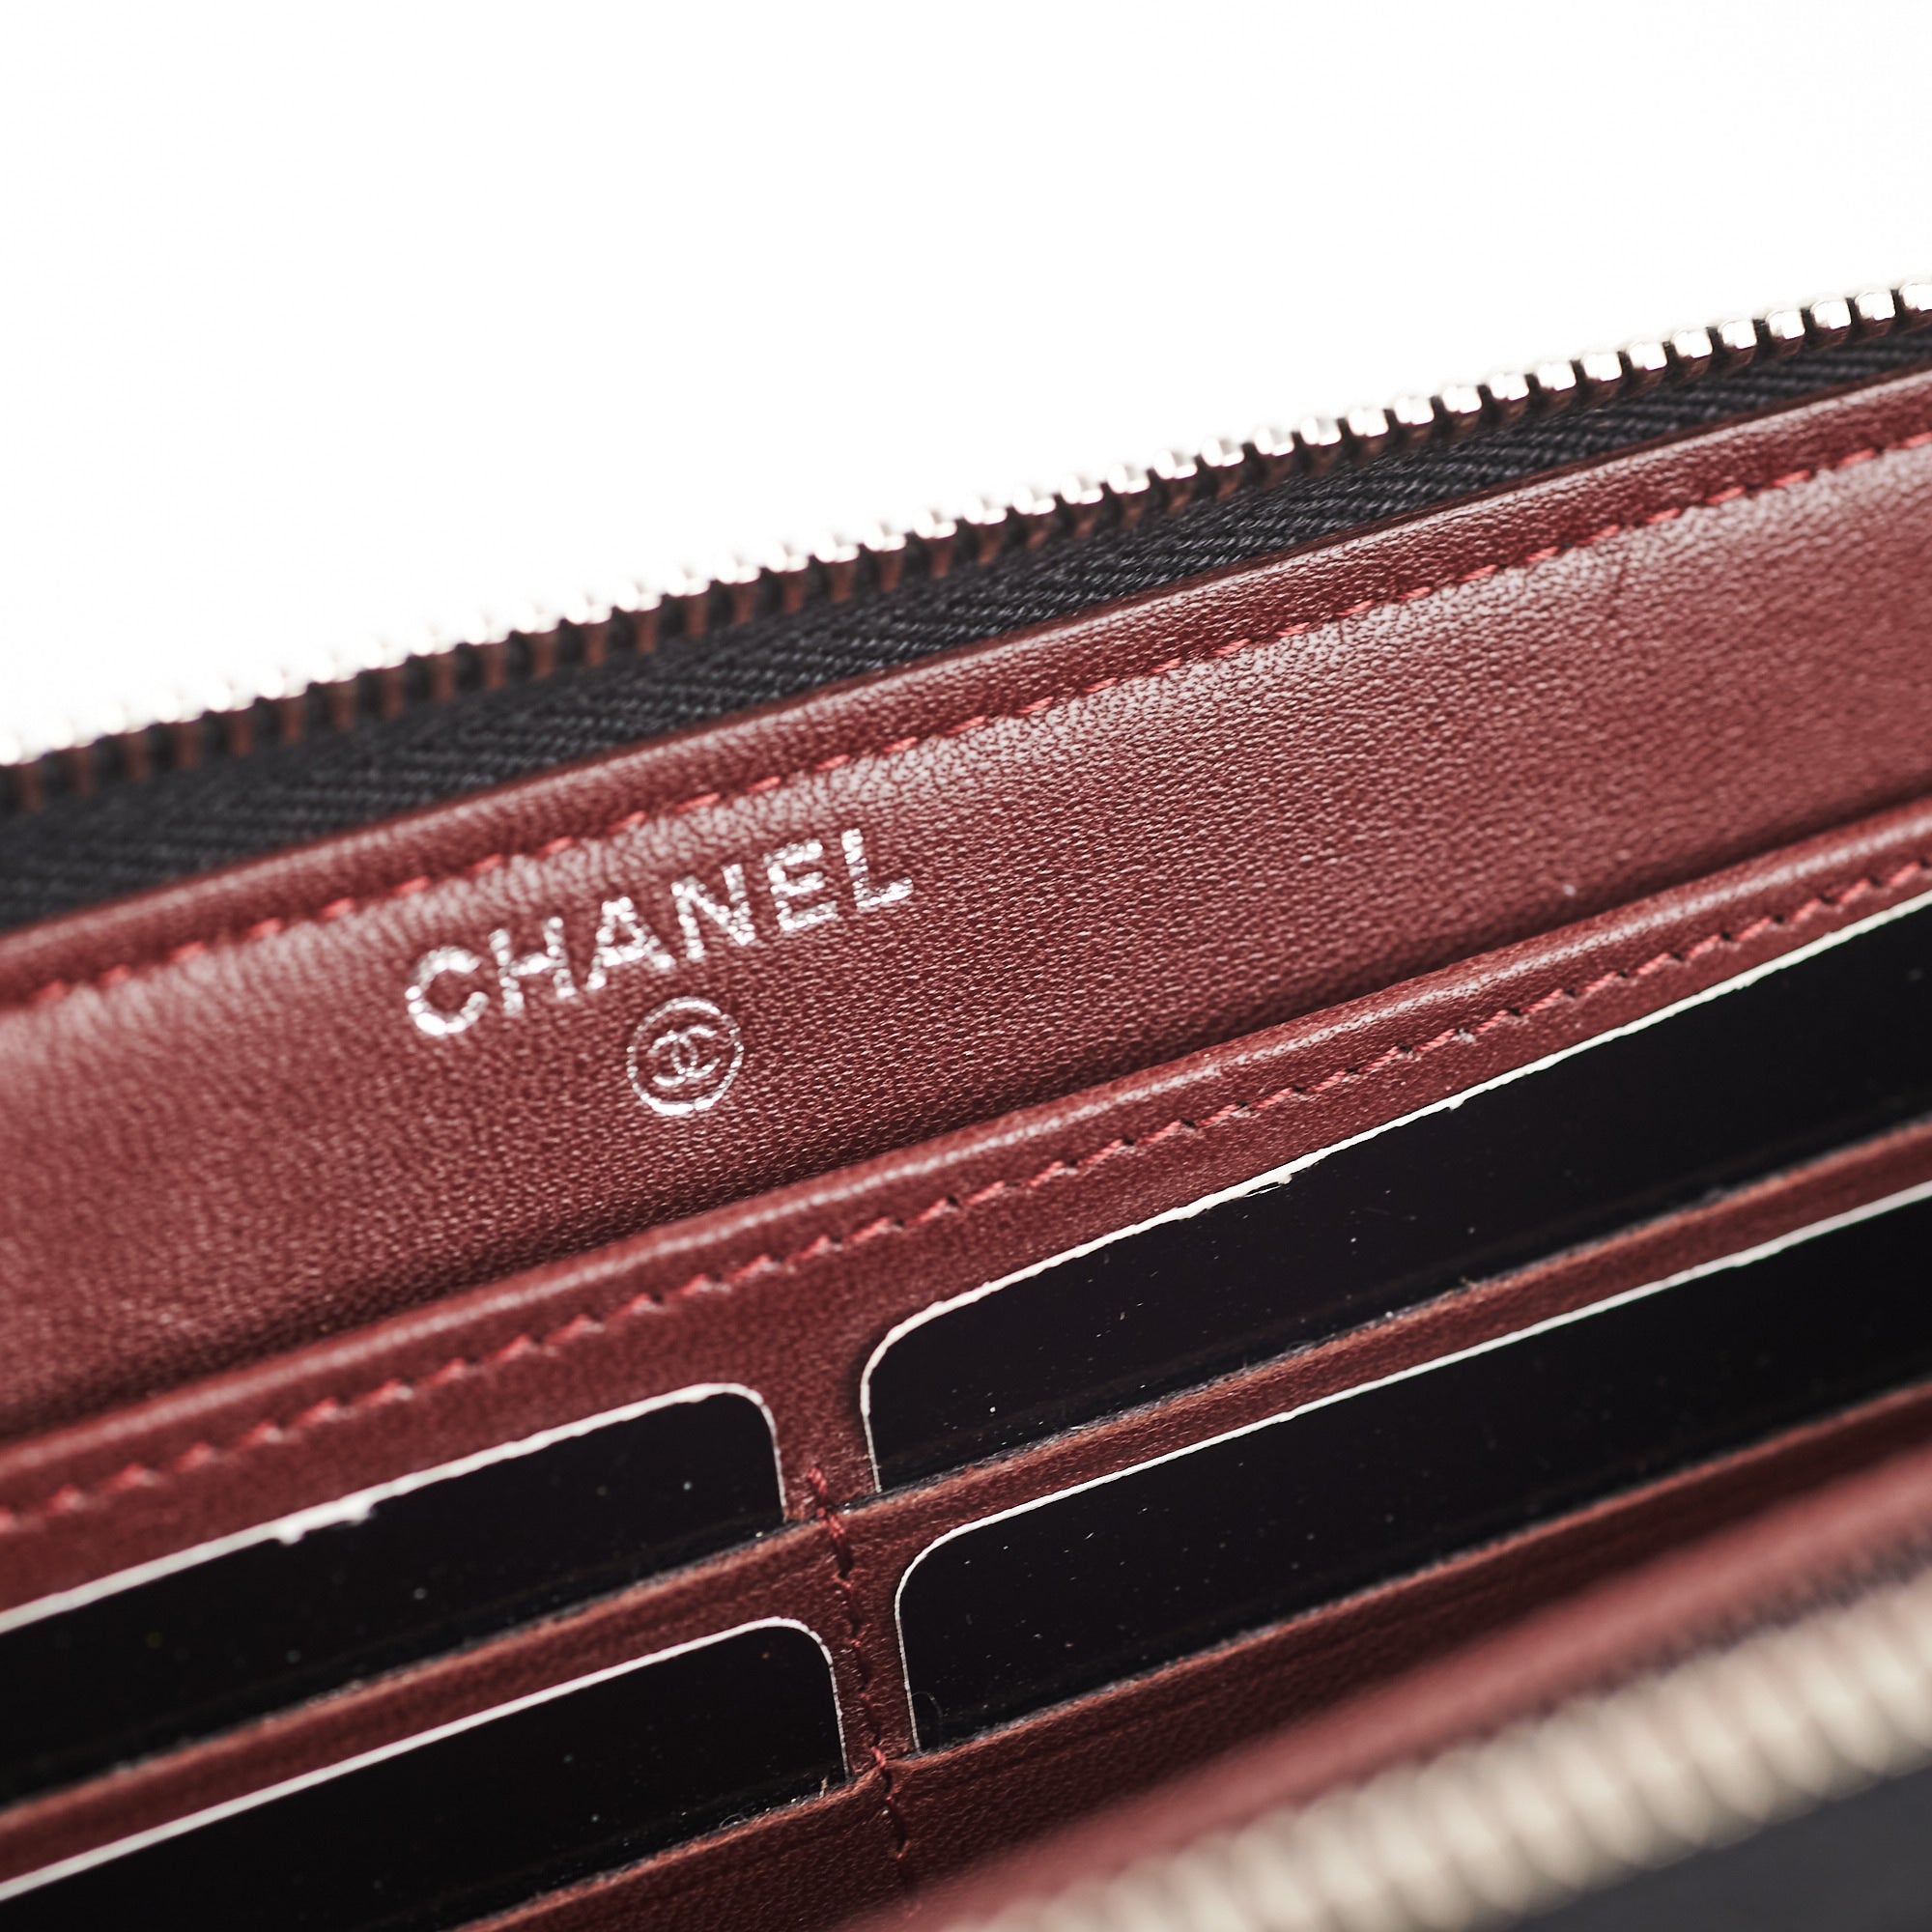 Classic long zipped wallet - Grained calfskin & gold-tone metal, black —  Fashion